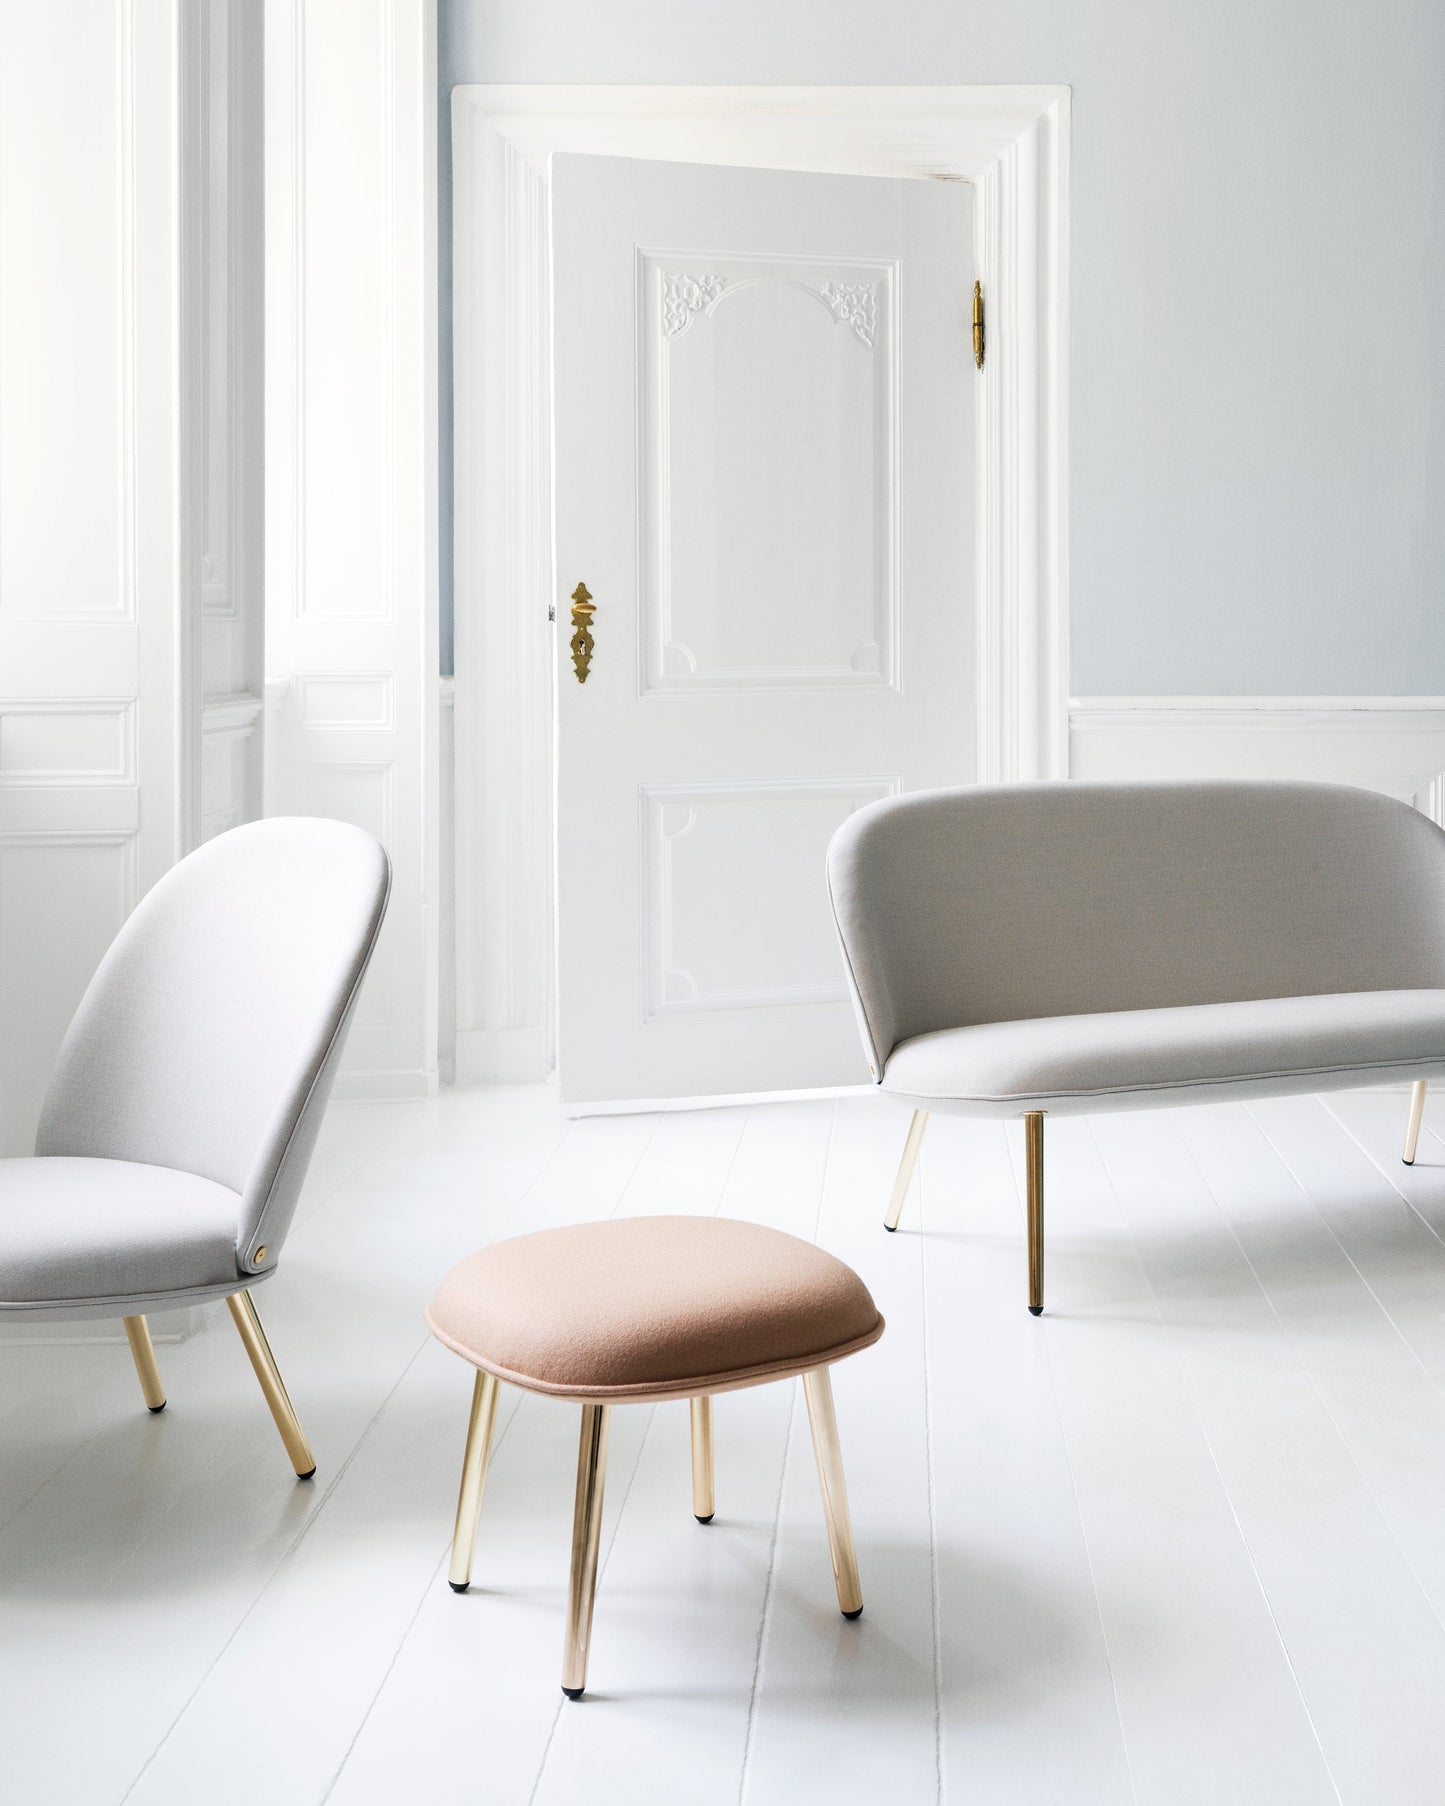 Ace Lounge Chair Brass by Normann Copenhagen